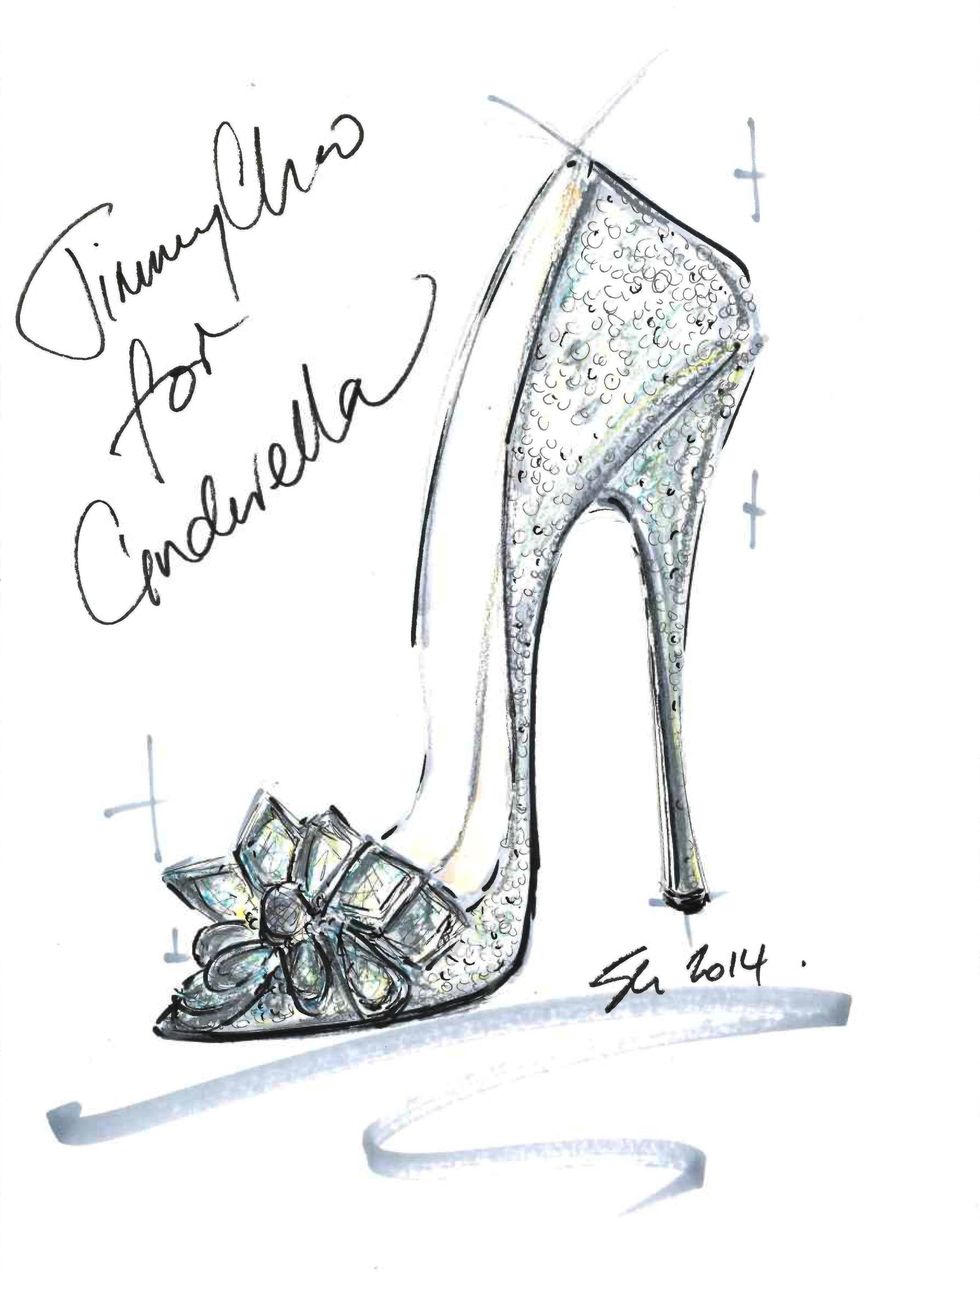 Cinderella\'s glass slippers: Ai nói rằng chỉ công chúa mới sở hữu được đôi giày kính Cinderella đẹp như mơ? Với những mẫu giày kính Cinderella dành cho người lớn và trẻ em, bạn sẽ trở thành nhân vật cổ tích đầy thần tiên trong những bước đi êm ái trên đôi giày thiên nga đẹp nhất.